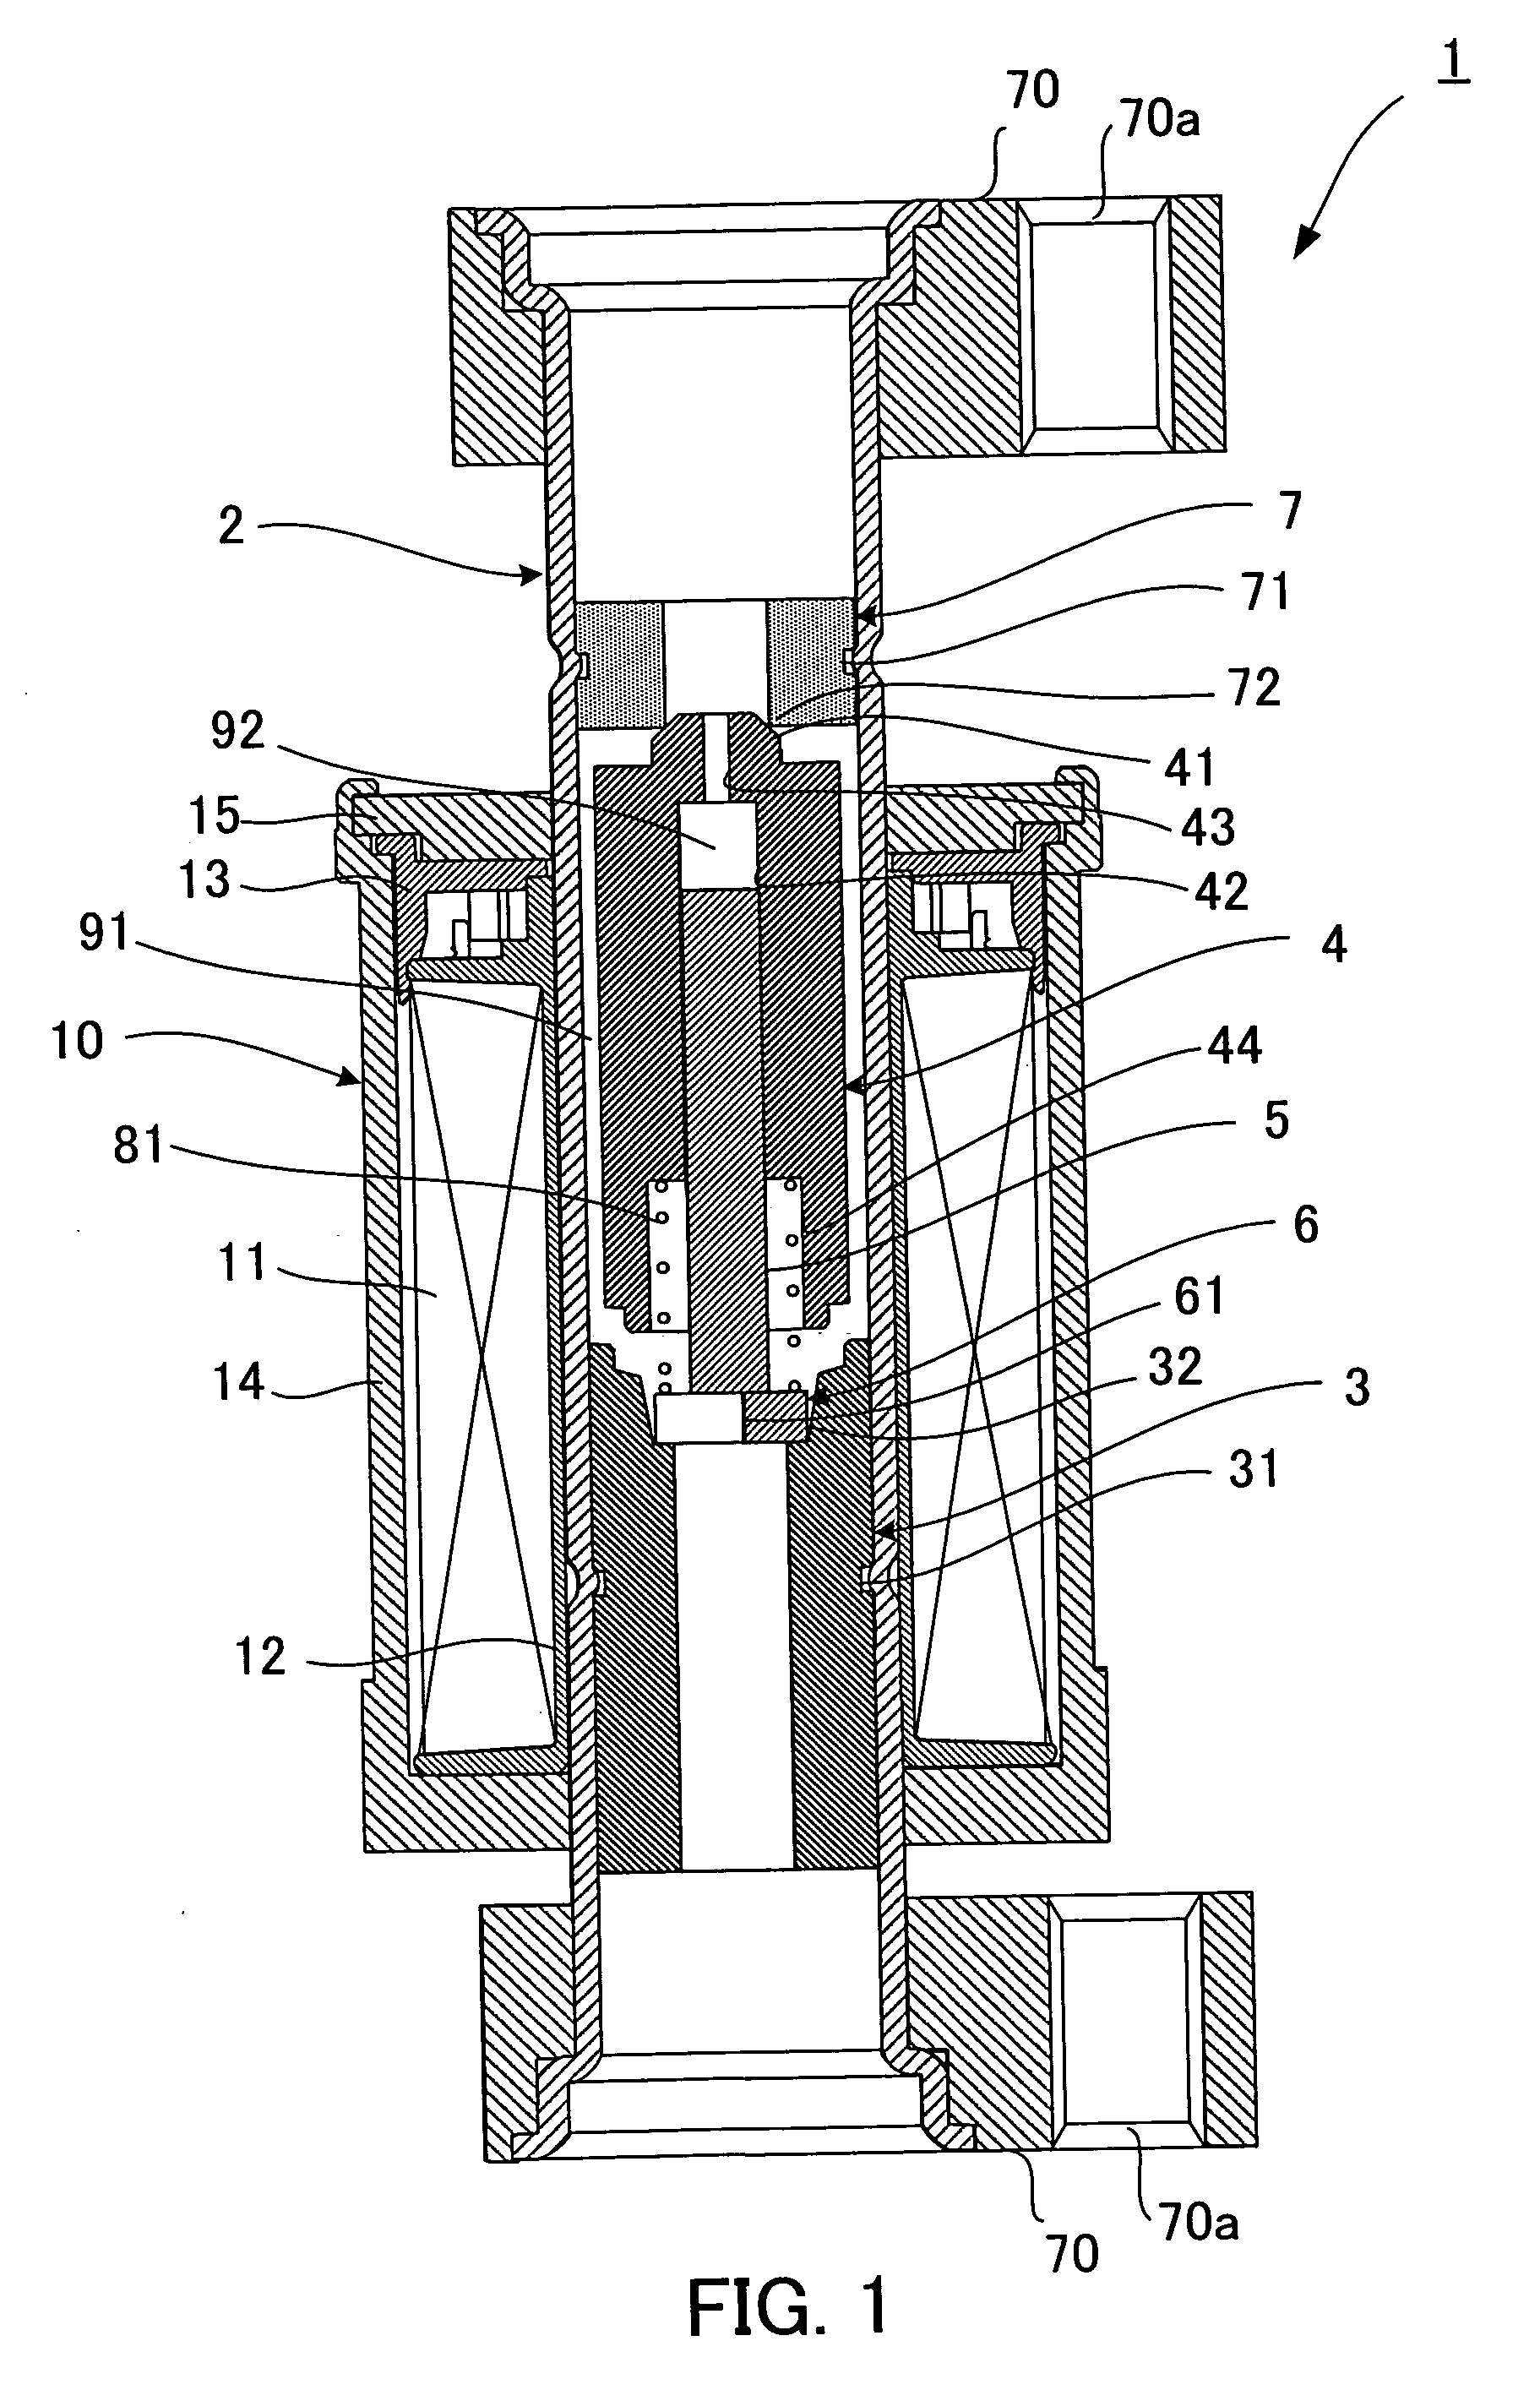 Constant differential pressure valve